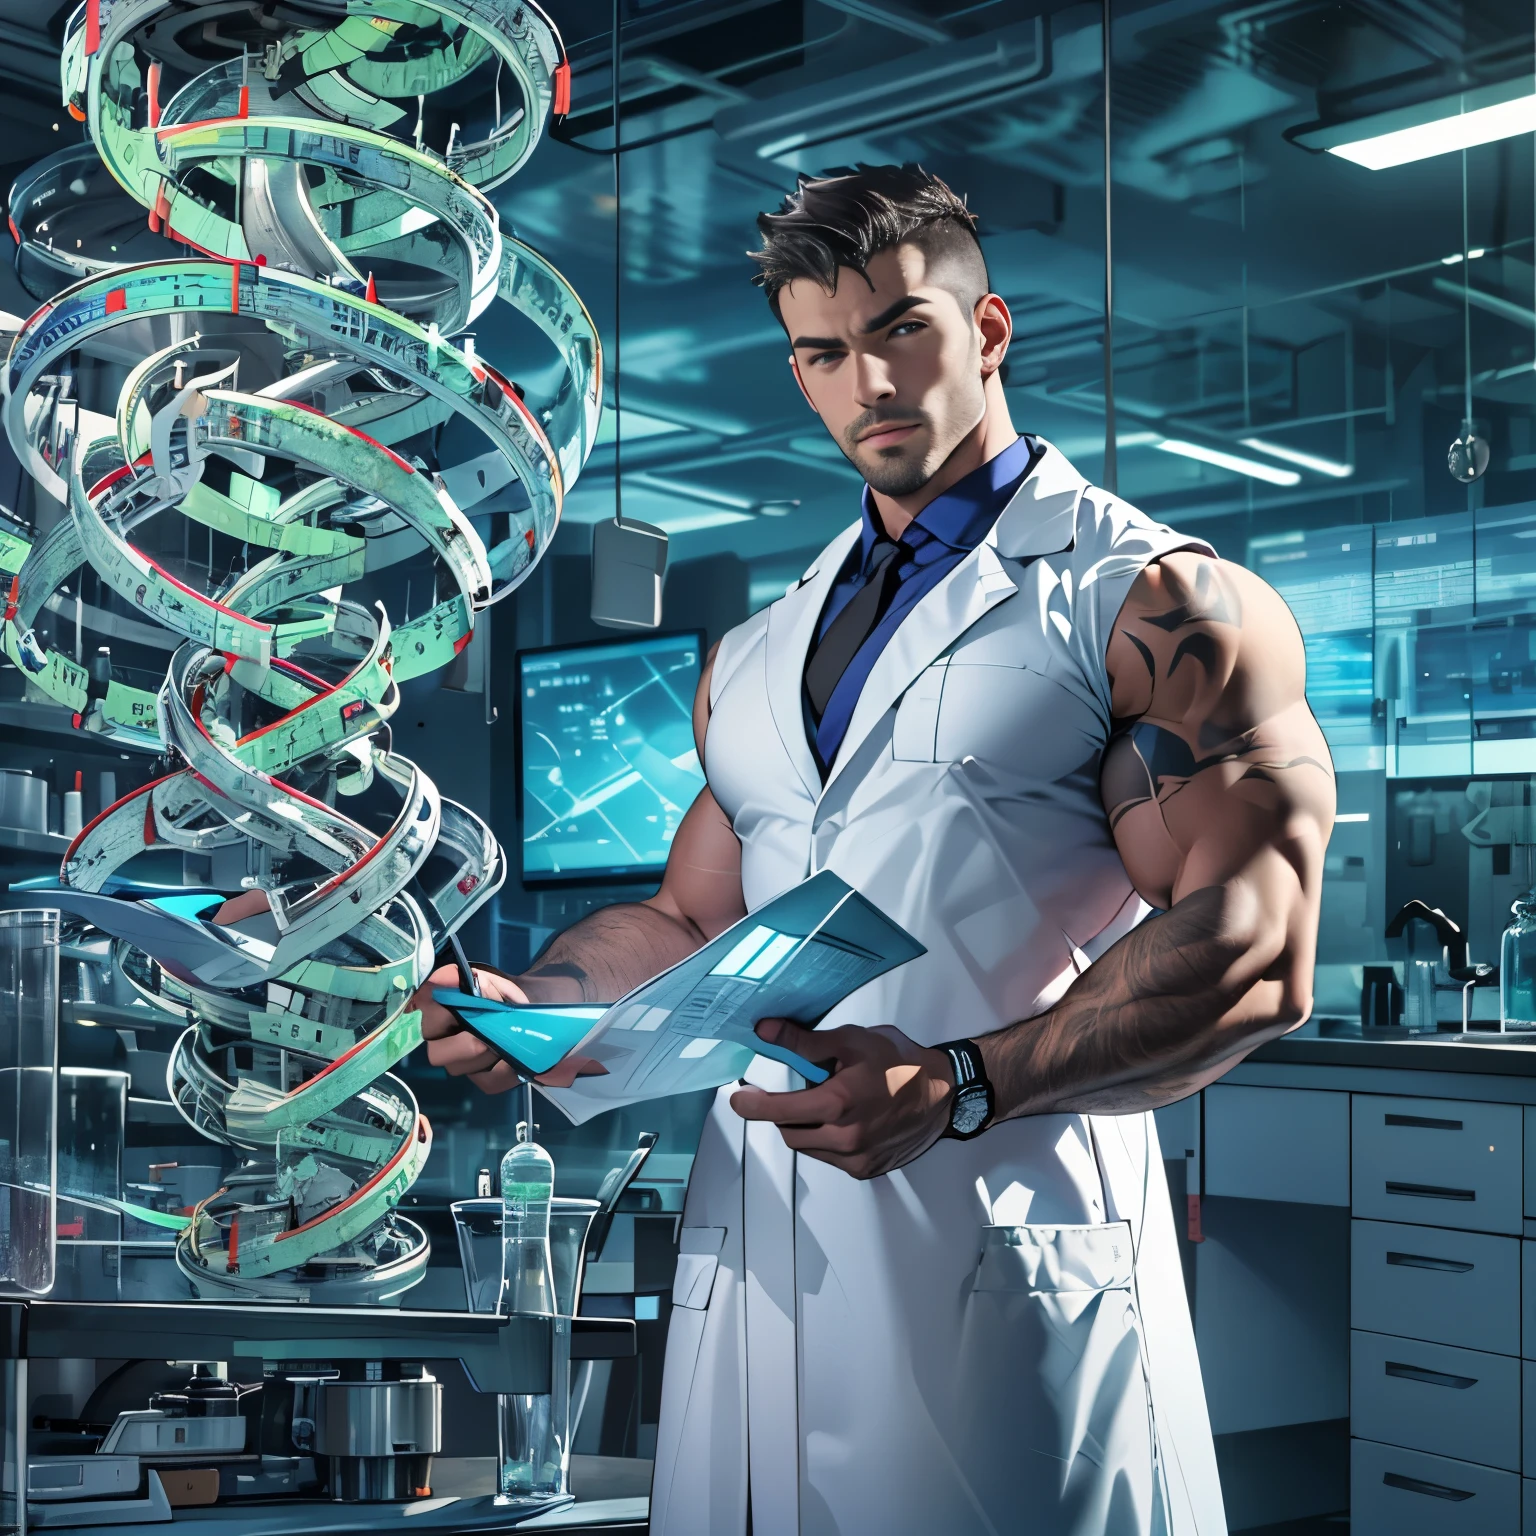 красивый учёный в откровенном лабораторном халате, мускулистый, изучение модели спирали ДНК, футуристическая лабораторная обстановка, Сосредоточенный, хорошая кожа, большая выпуклость, большие мышцы